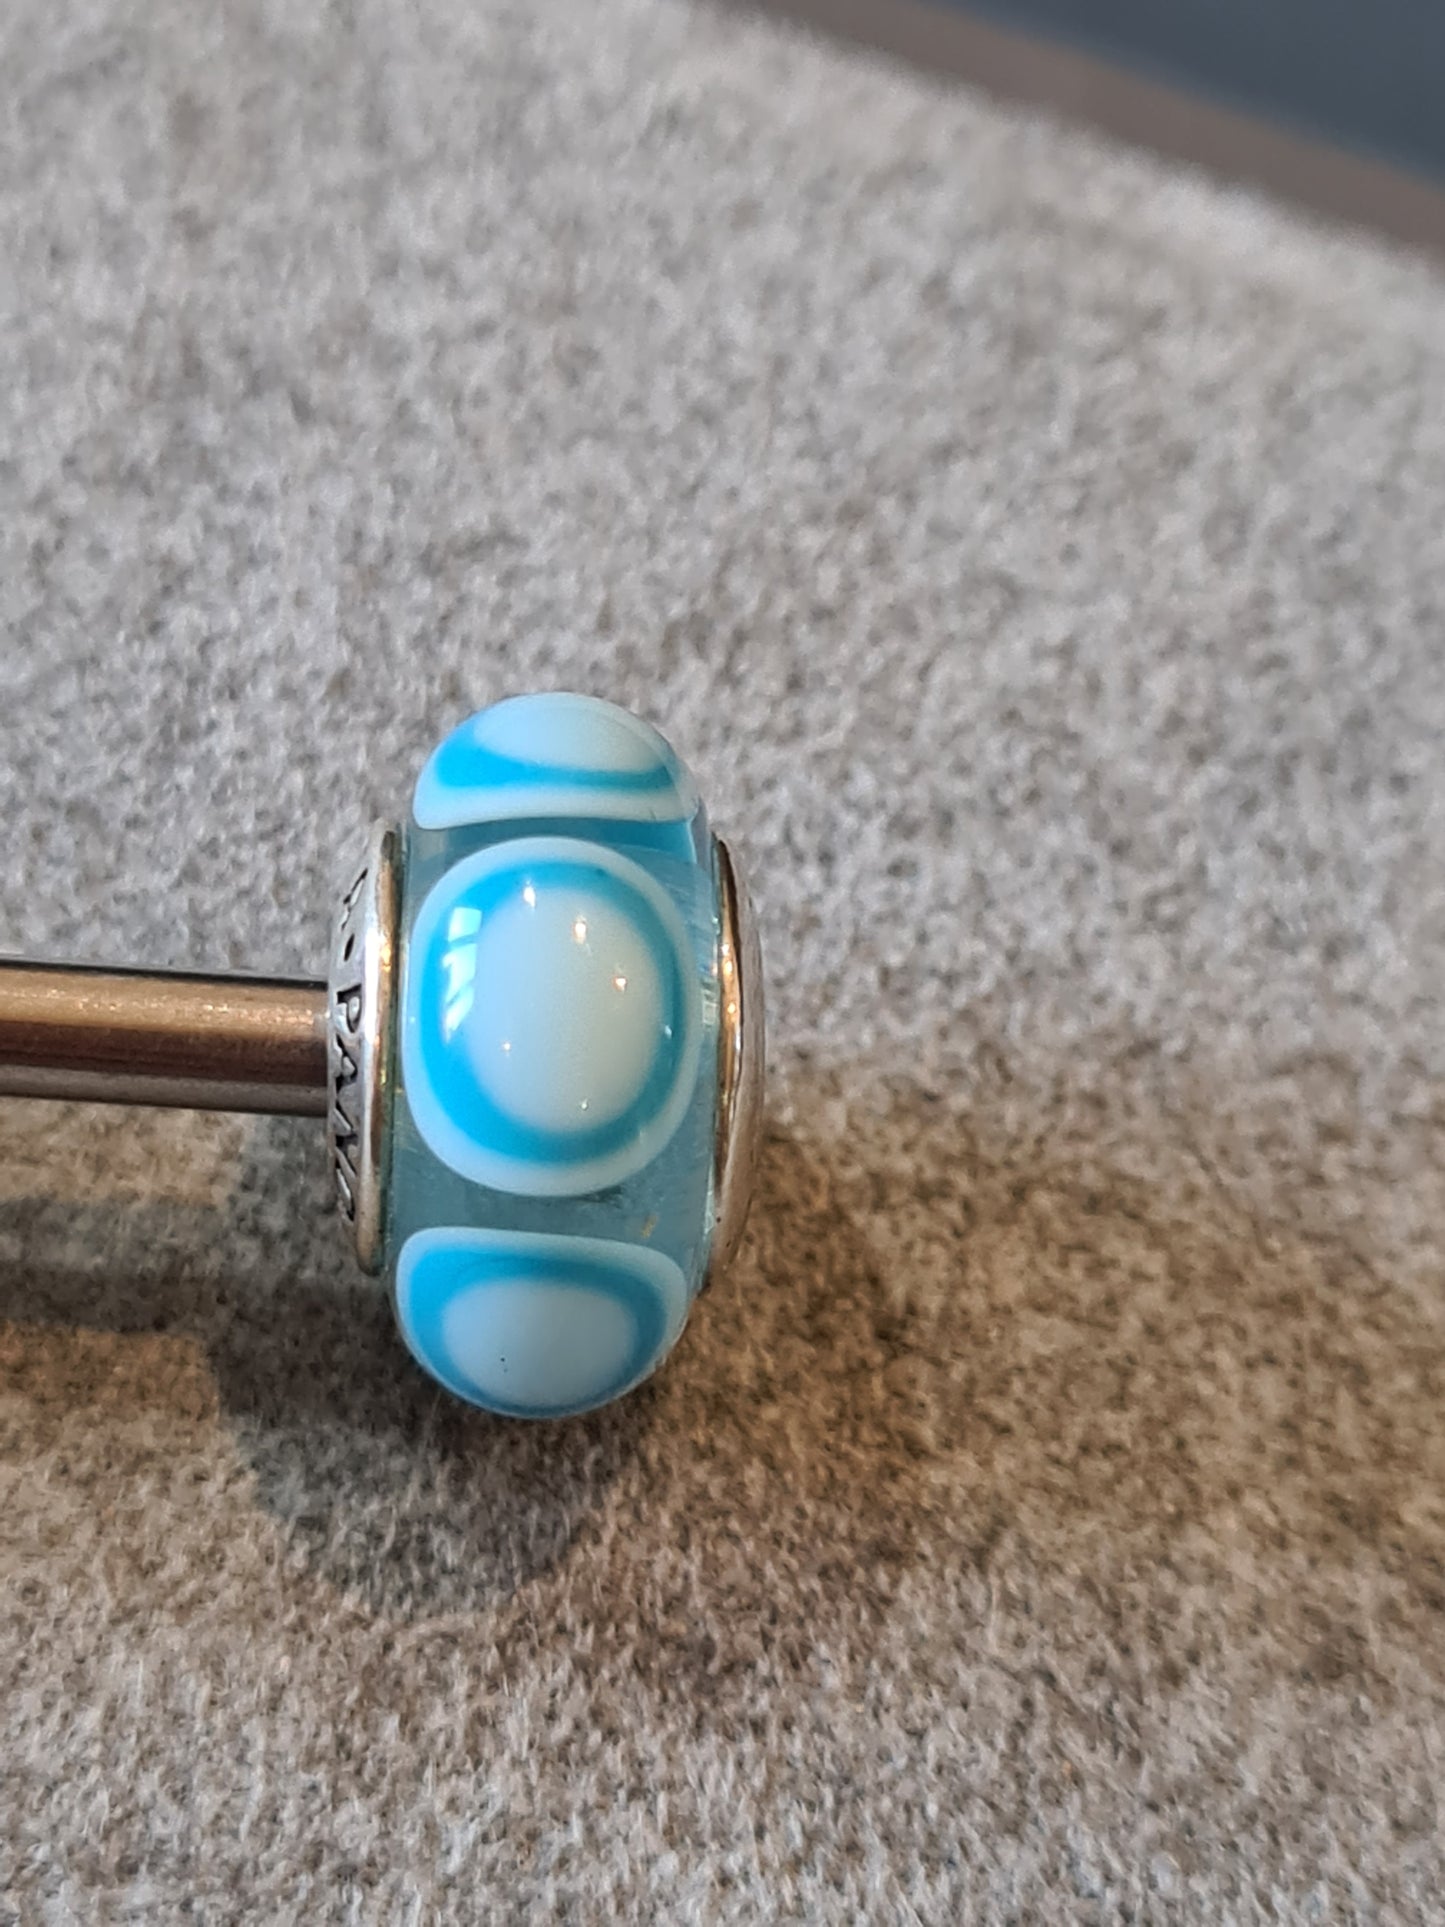 Genuine Pandora Blue Bullseye Murano Glass Charm